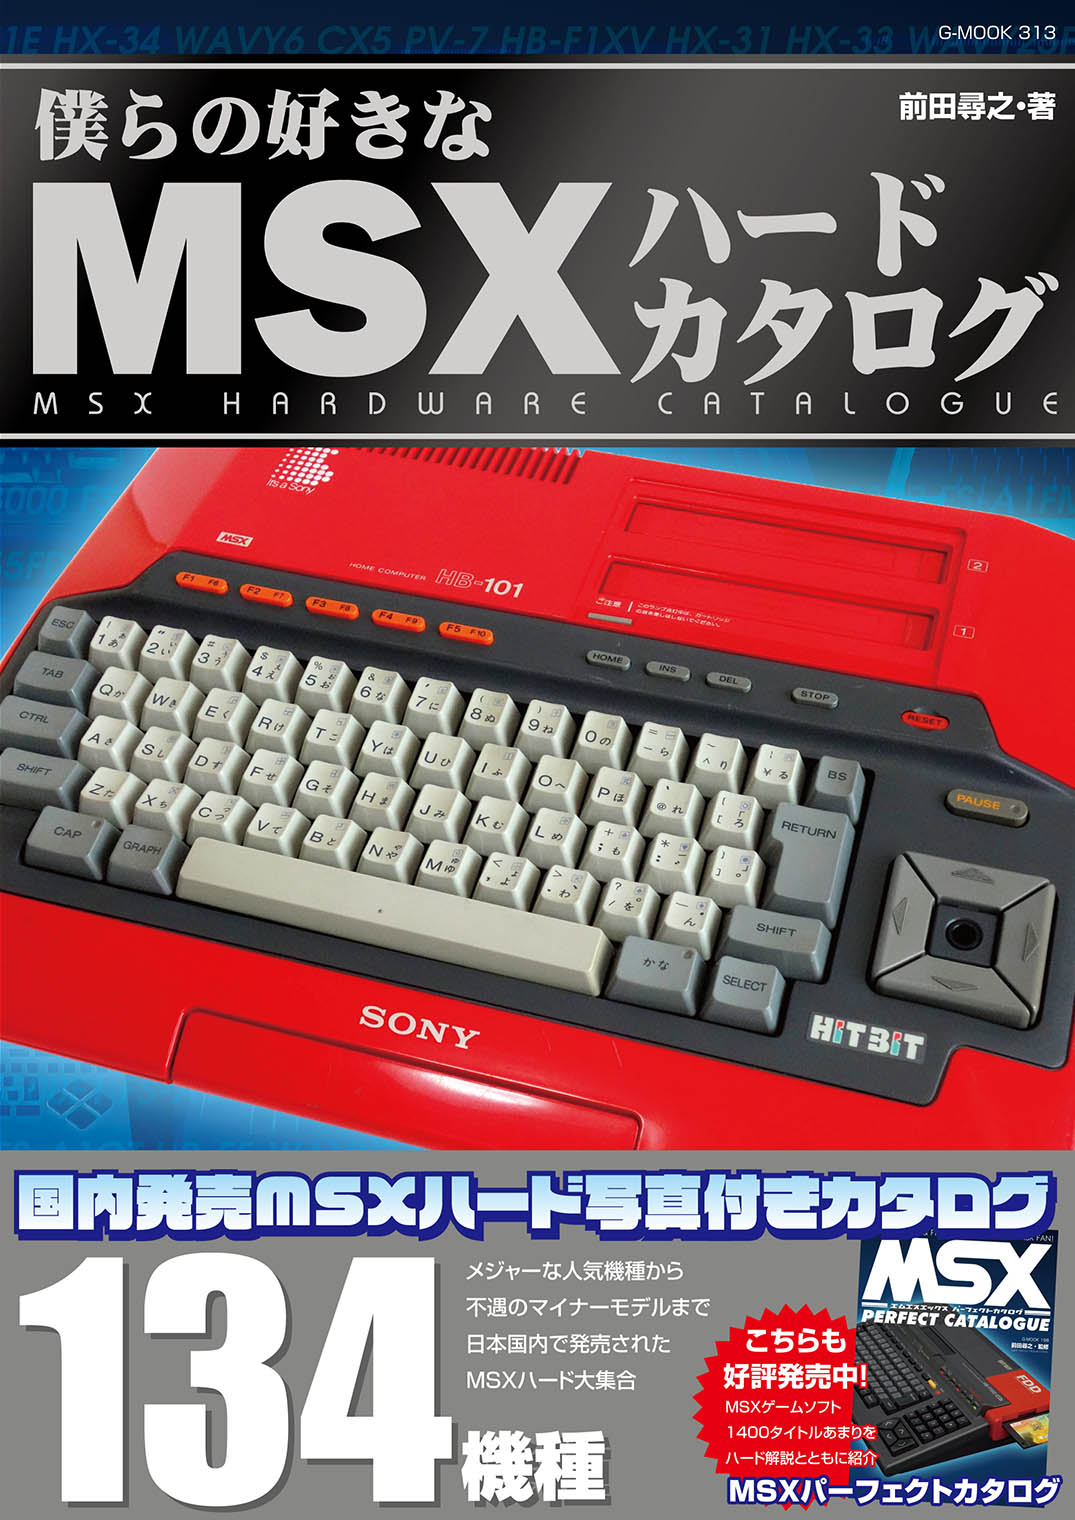 MSX、総勢134機種を紹介。「僕らの好きなMSXハードカタログ」2月26日